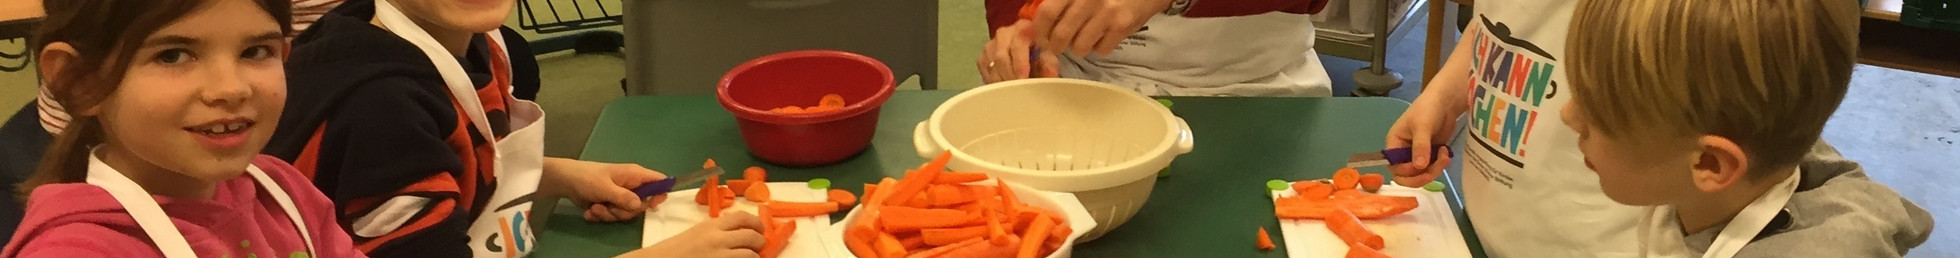 Kinder schneiden gemeinsam Gemüse, das sie in ihrem Schulgarten geerntet haben.